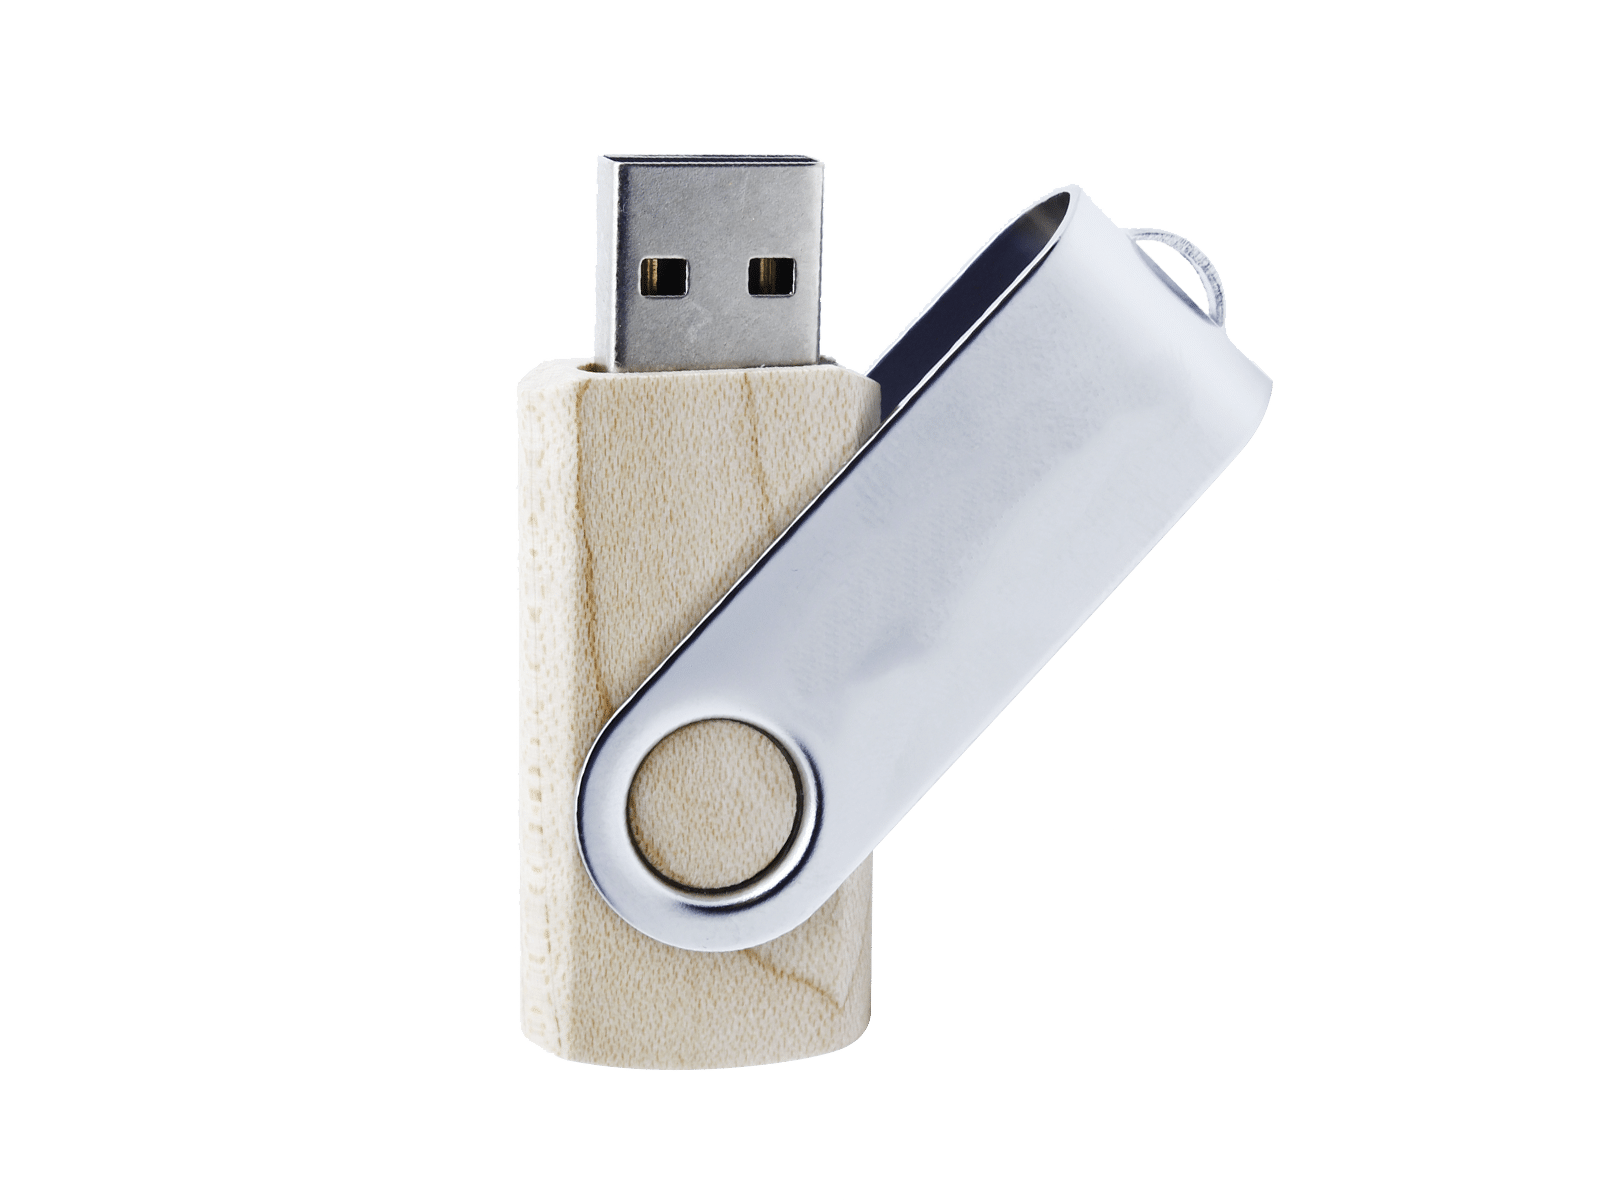 Clés USB OTG (On The Go) Publicitaires - A personnaliser